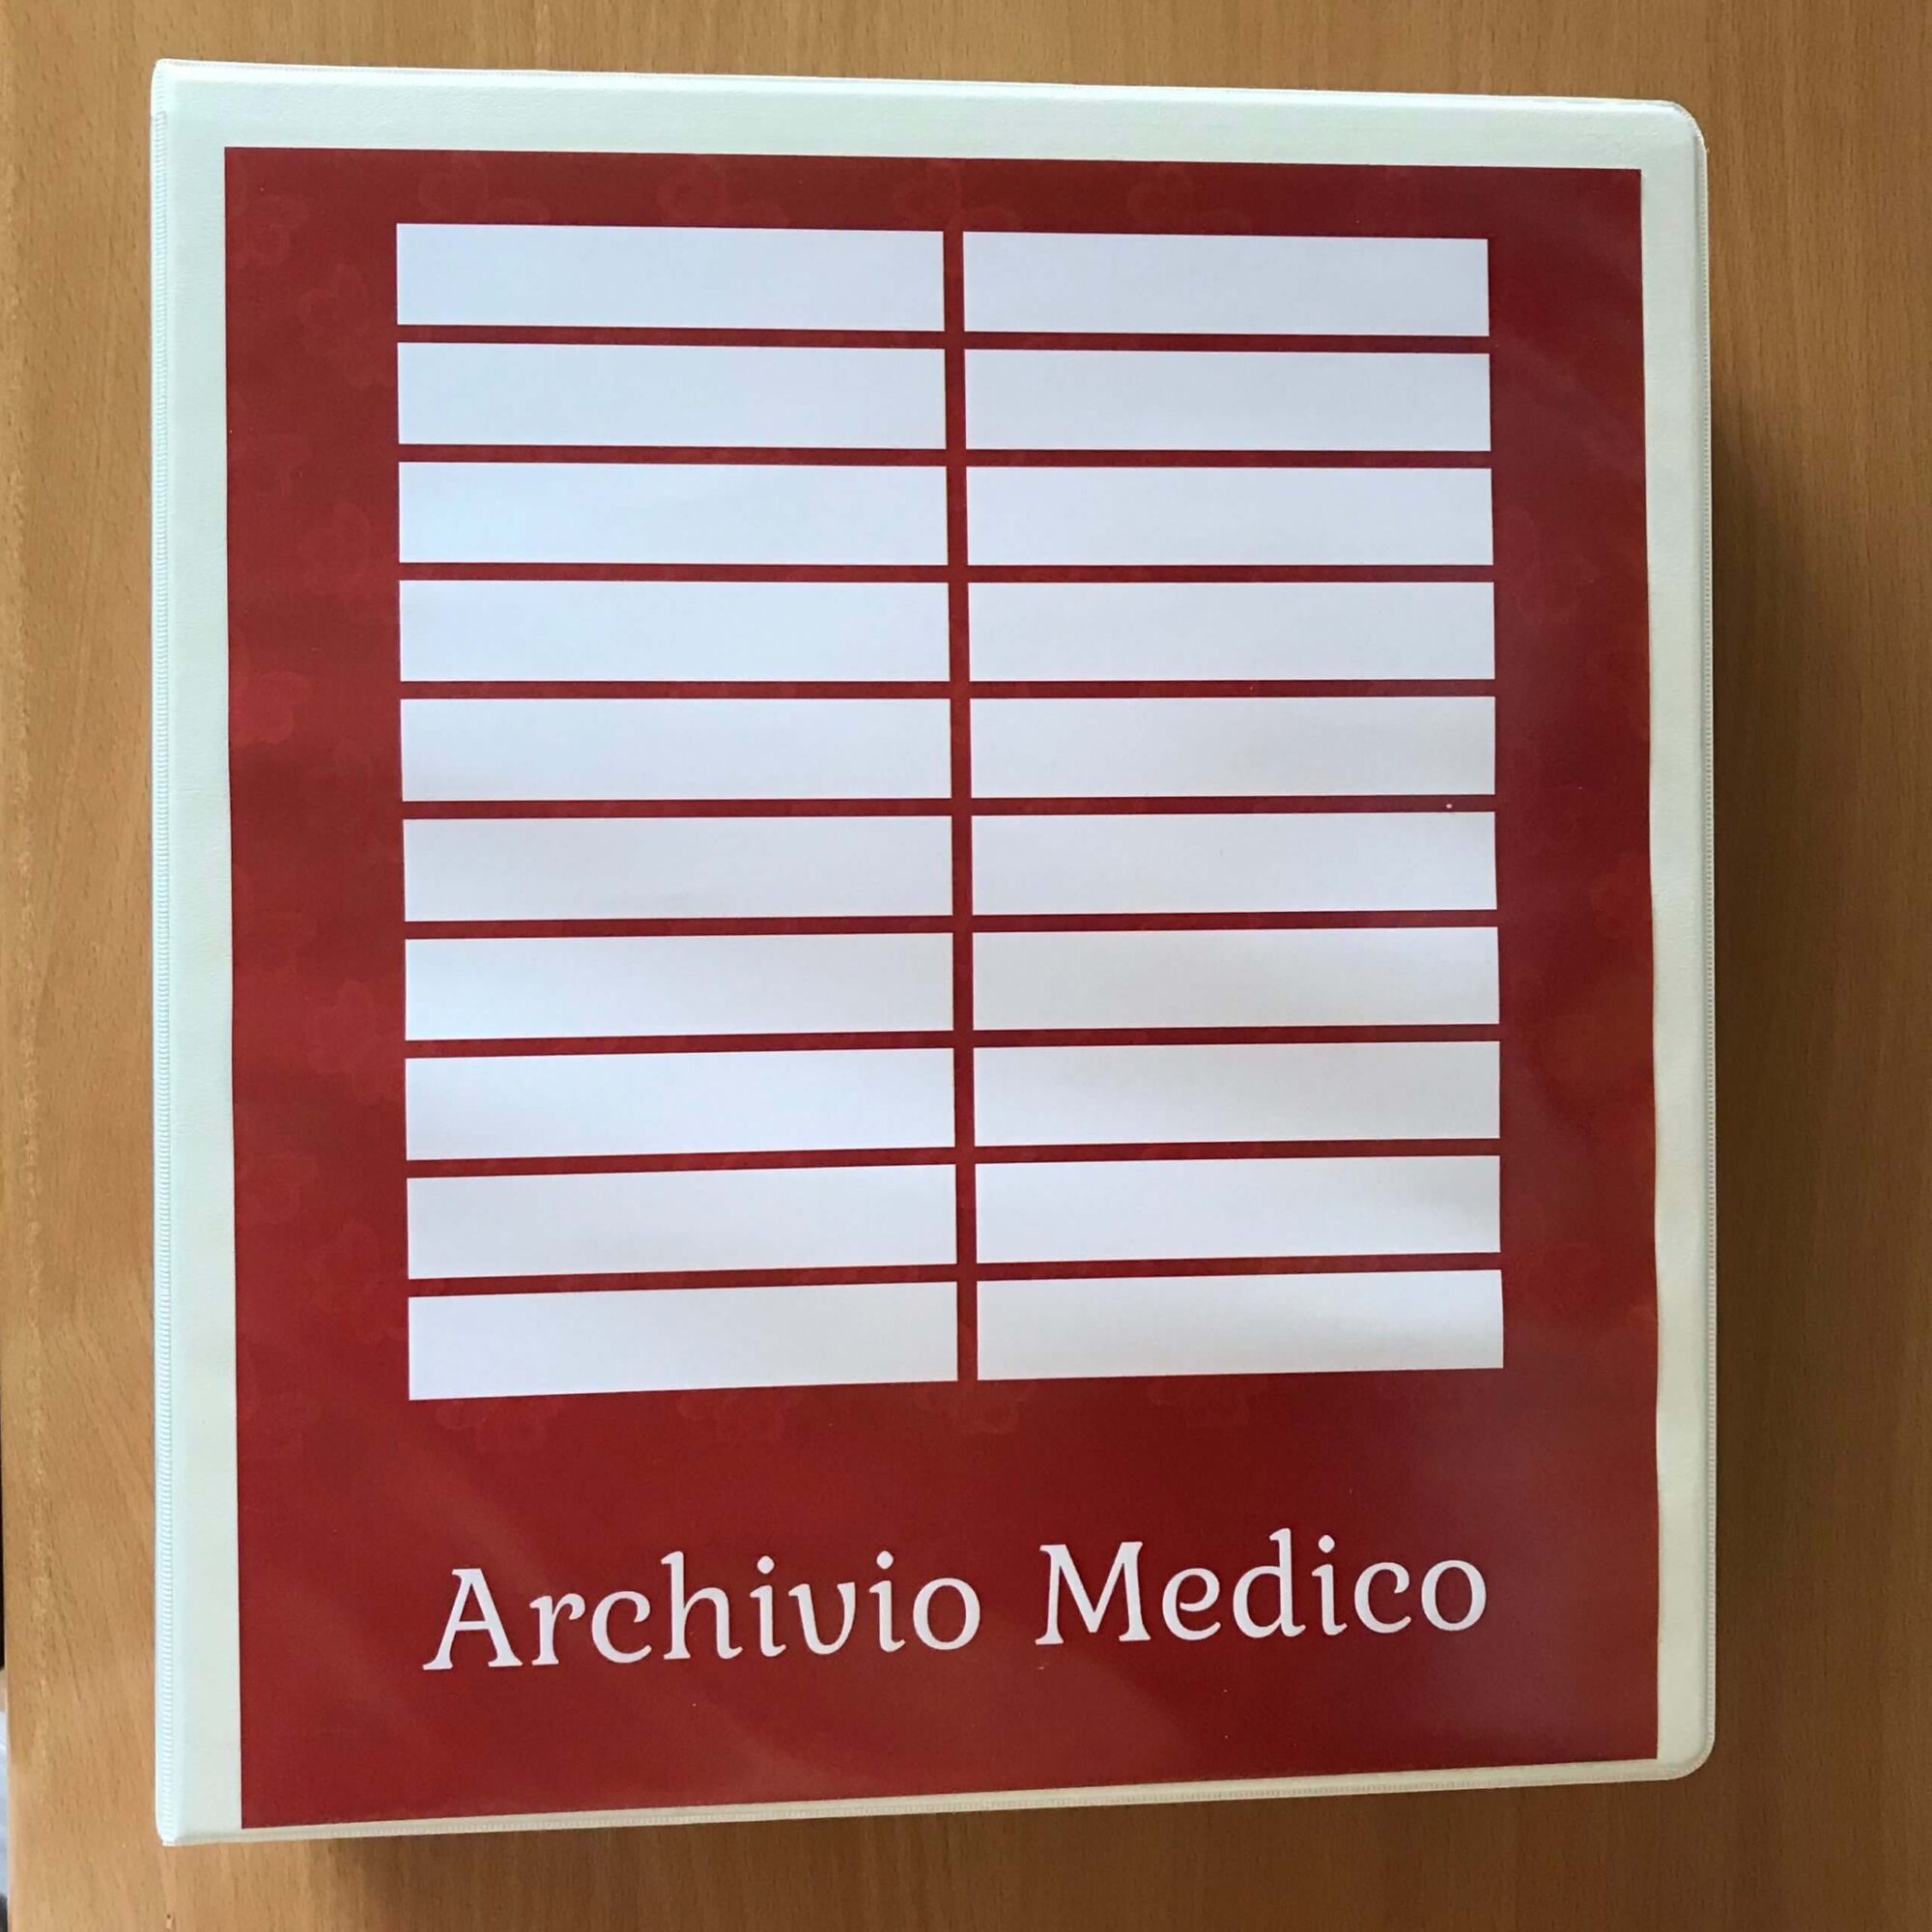 Organizzare casa - Archivio Medico, Indice contenuto Serena Mattia Professional Organizer, home organizer, personal organizer a Lugano, Ticino, Svizzera e Italia